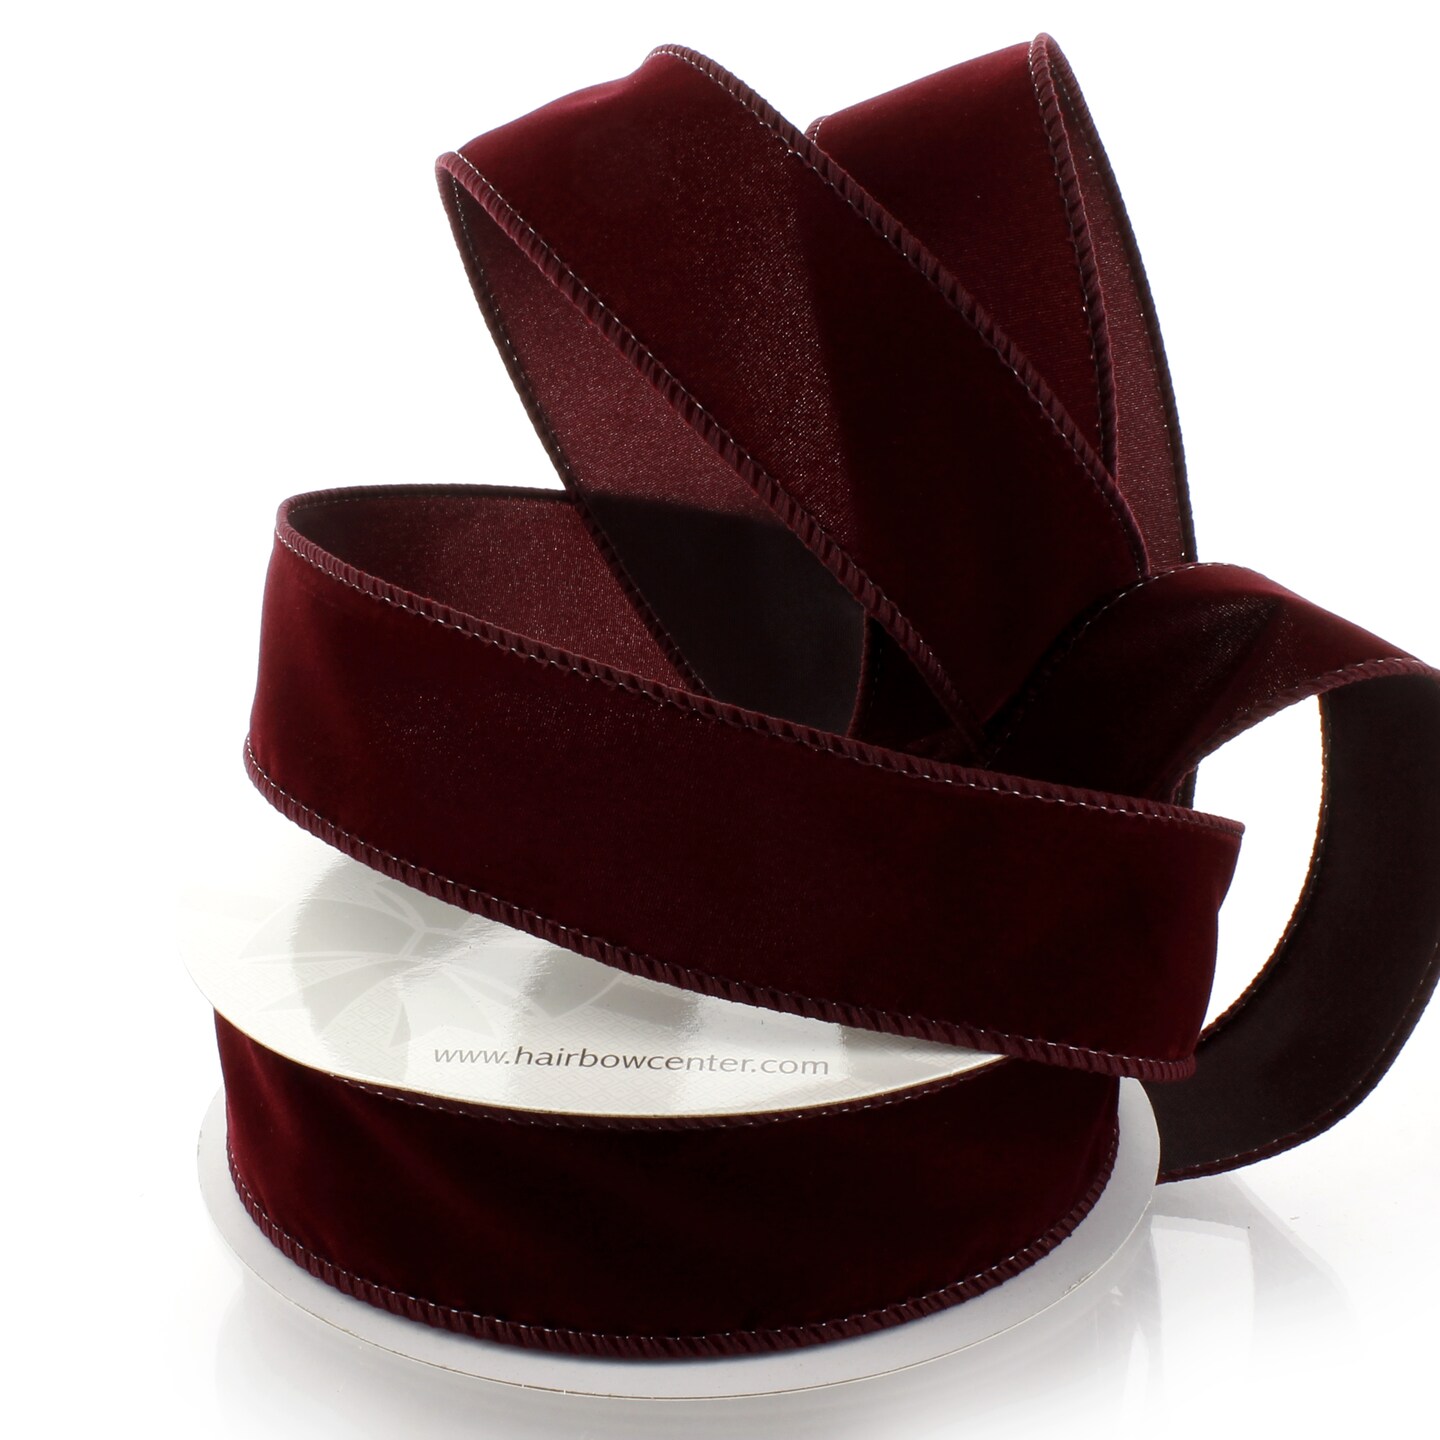 White Edge Velvet Ribbon from American Ribbon Manufacturers